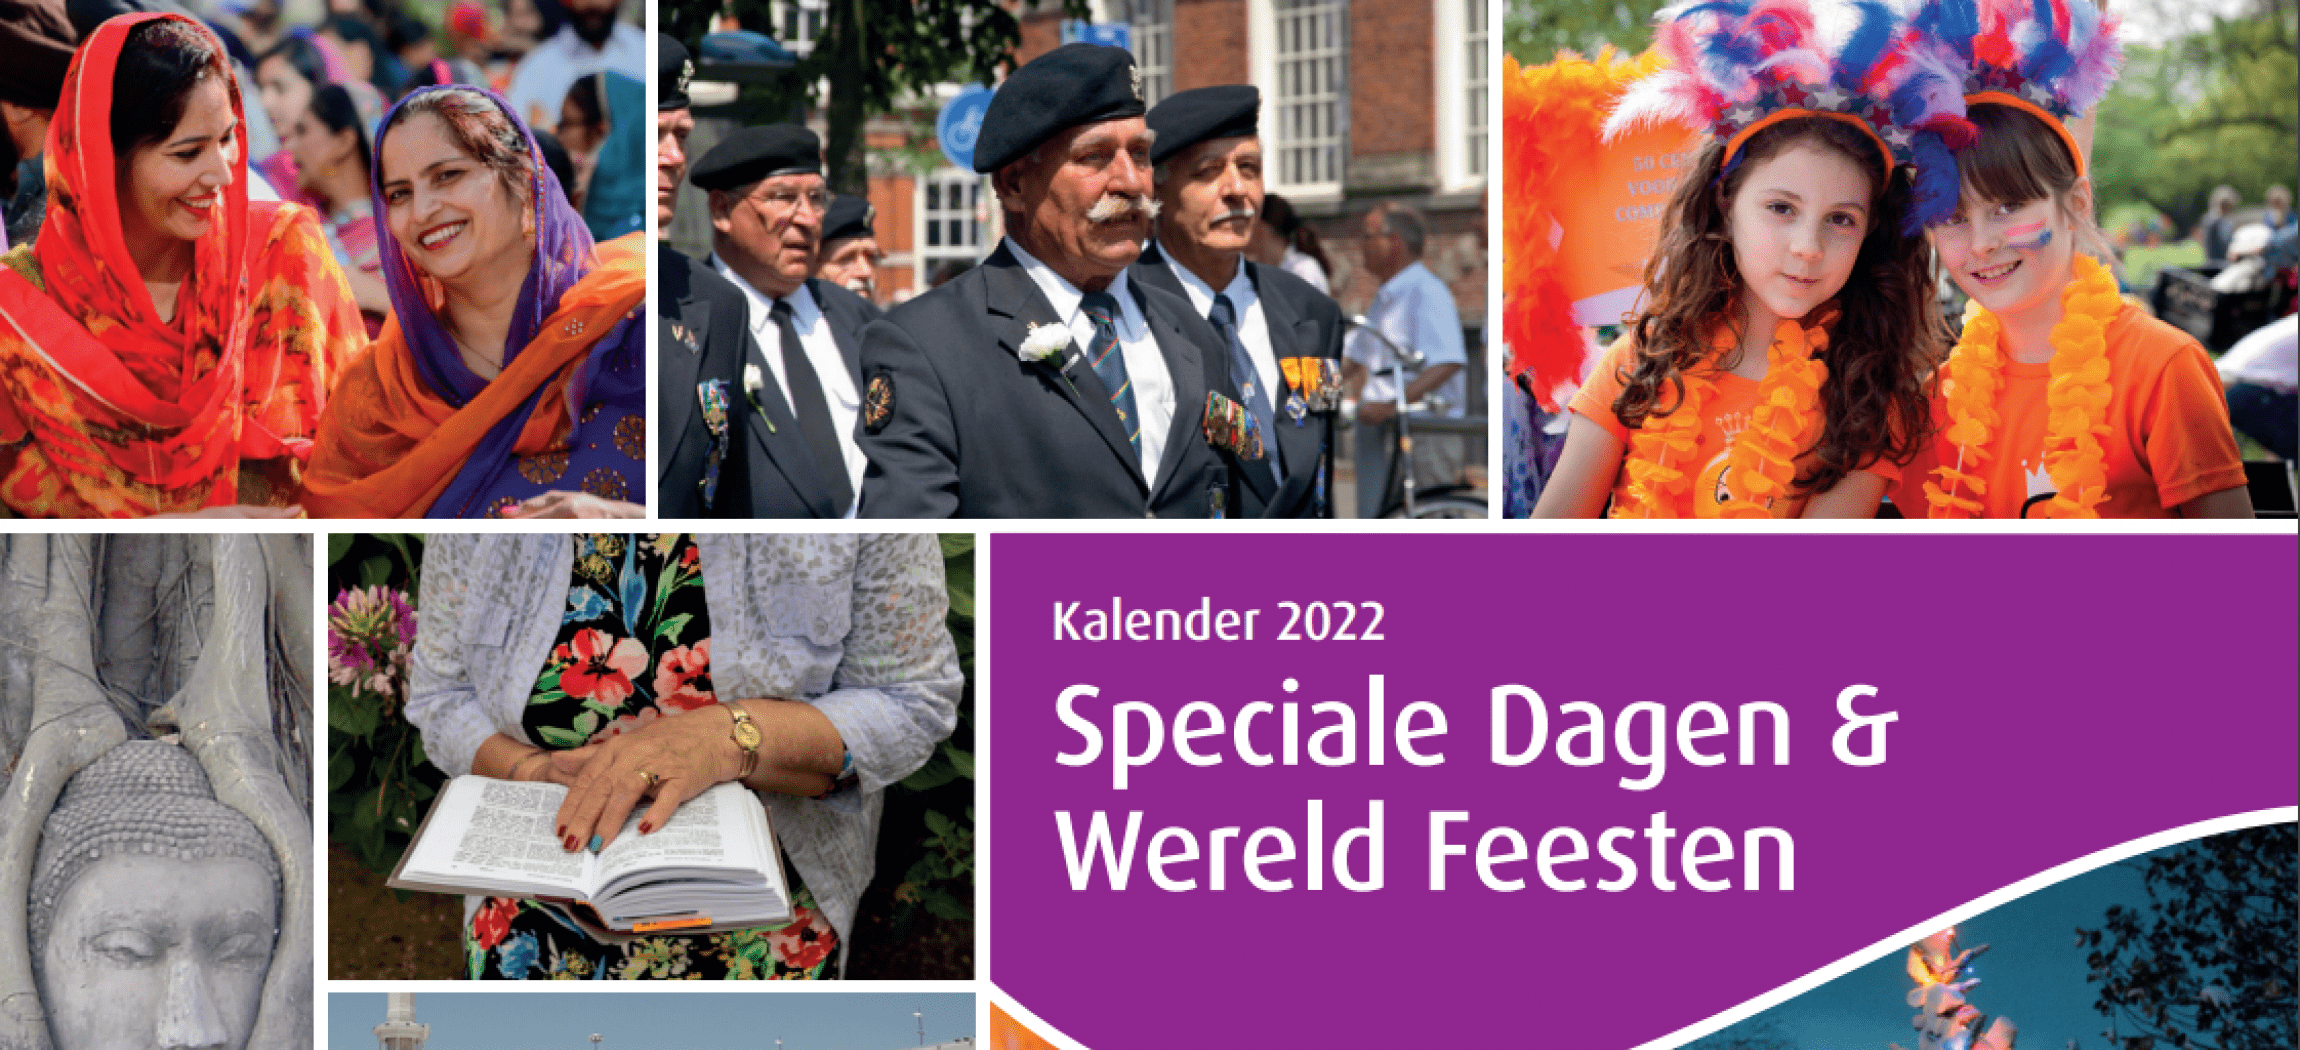 Amstelring Speciale Dagen & Wereld Feesten Kalender 2022